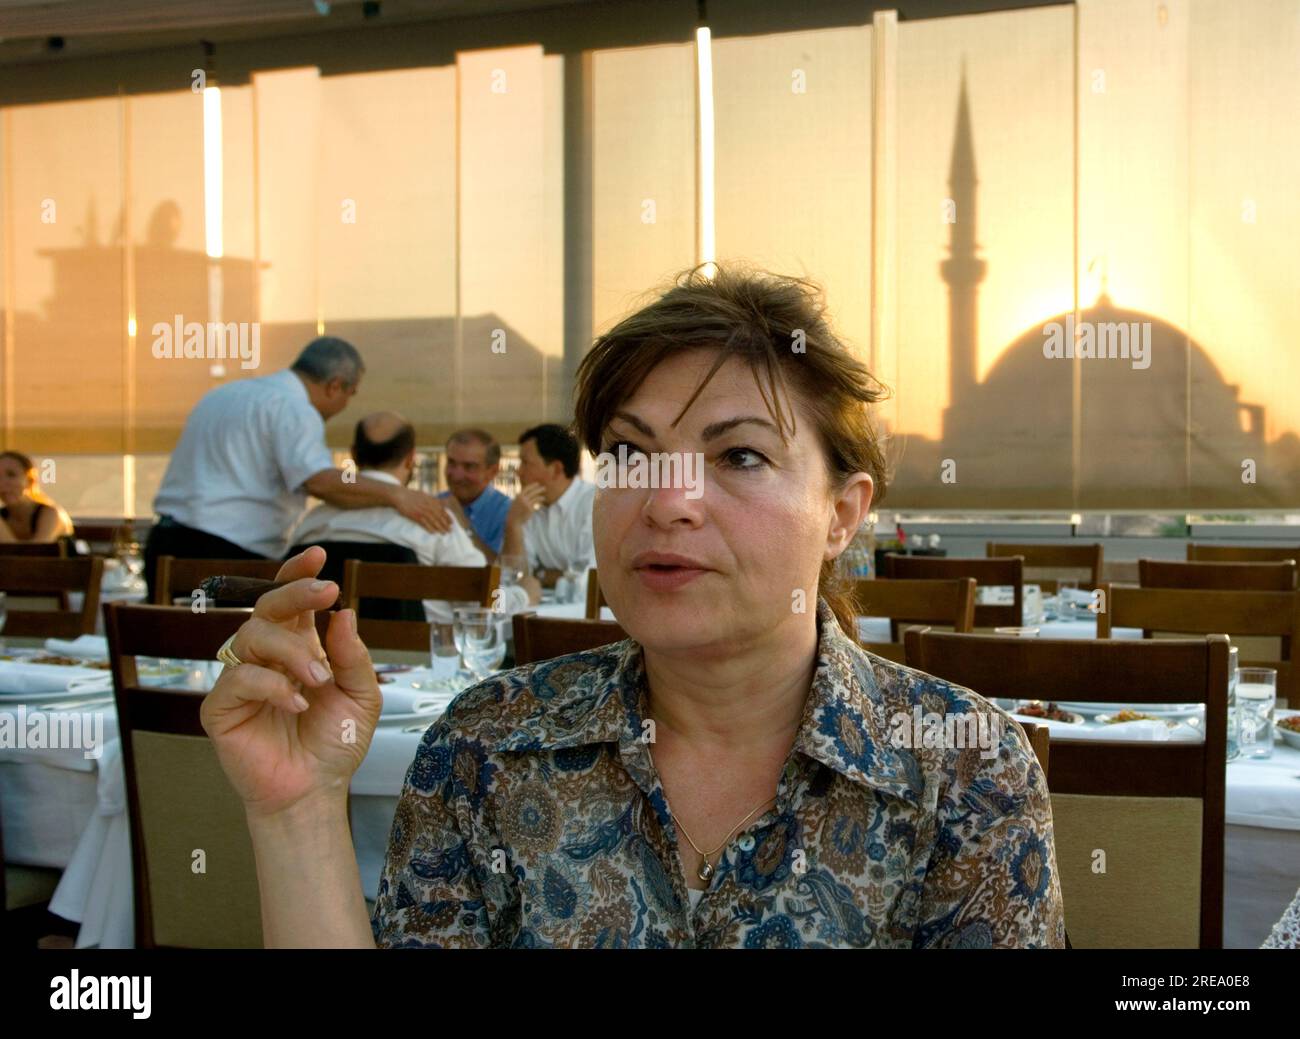 Una mujer turca moderna fumando un cigarrillo en un restaurante con una mezquita visible a través de sombras dibujadas al atardecer en Estambul, Turquía Foto de stock